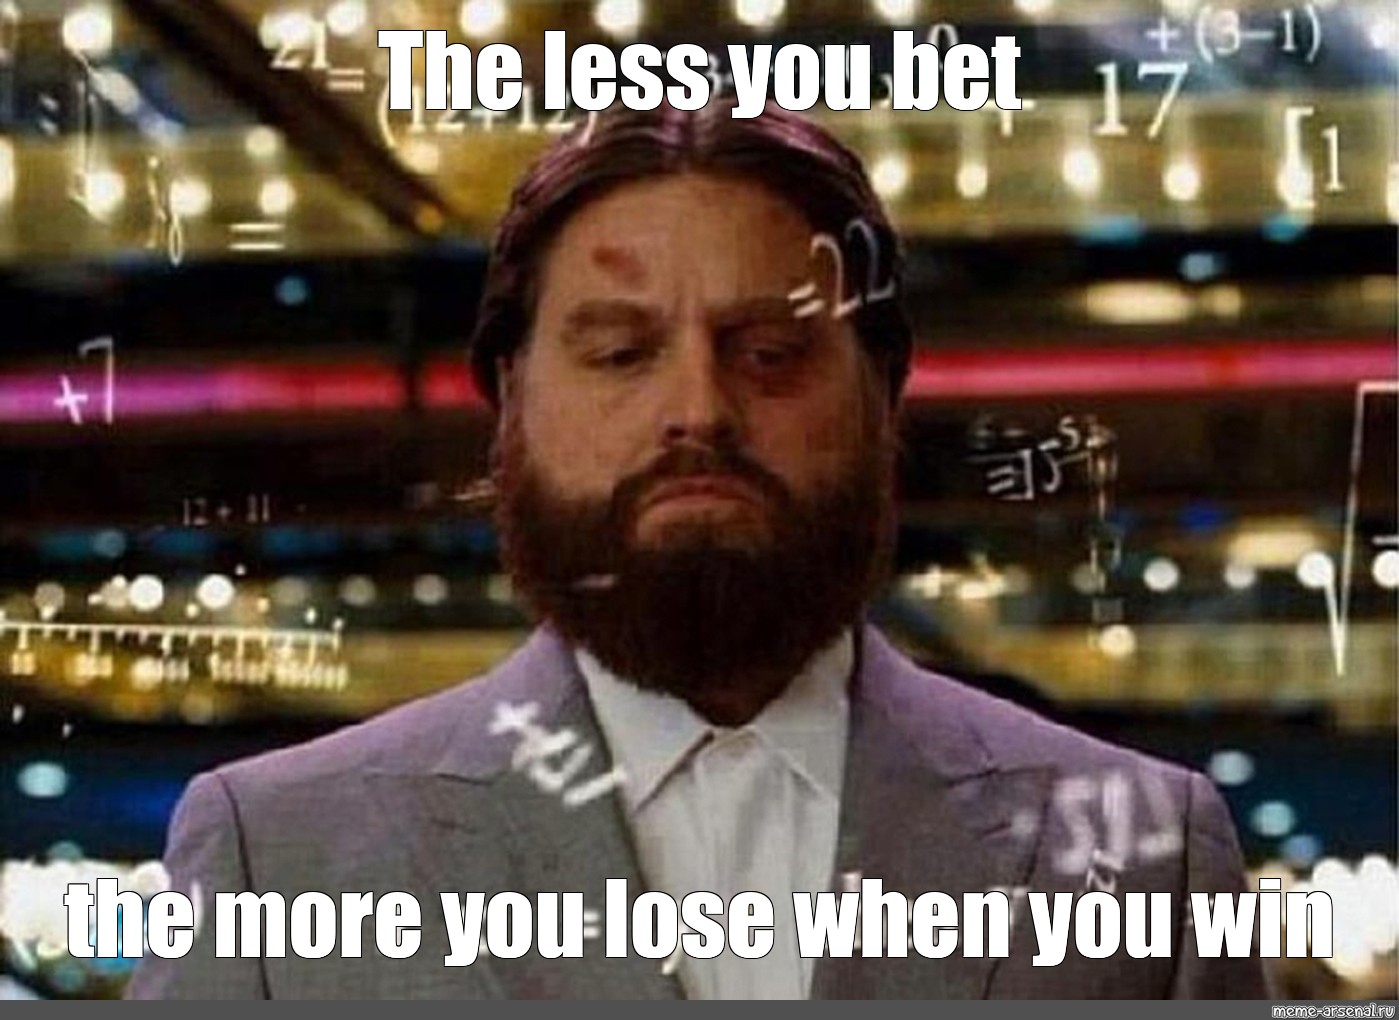 Meme: "The less you bet" - All Templates - Meme-arsenal.com